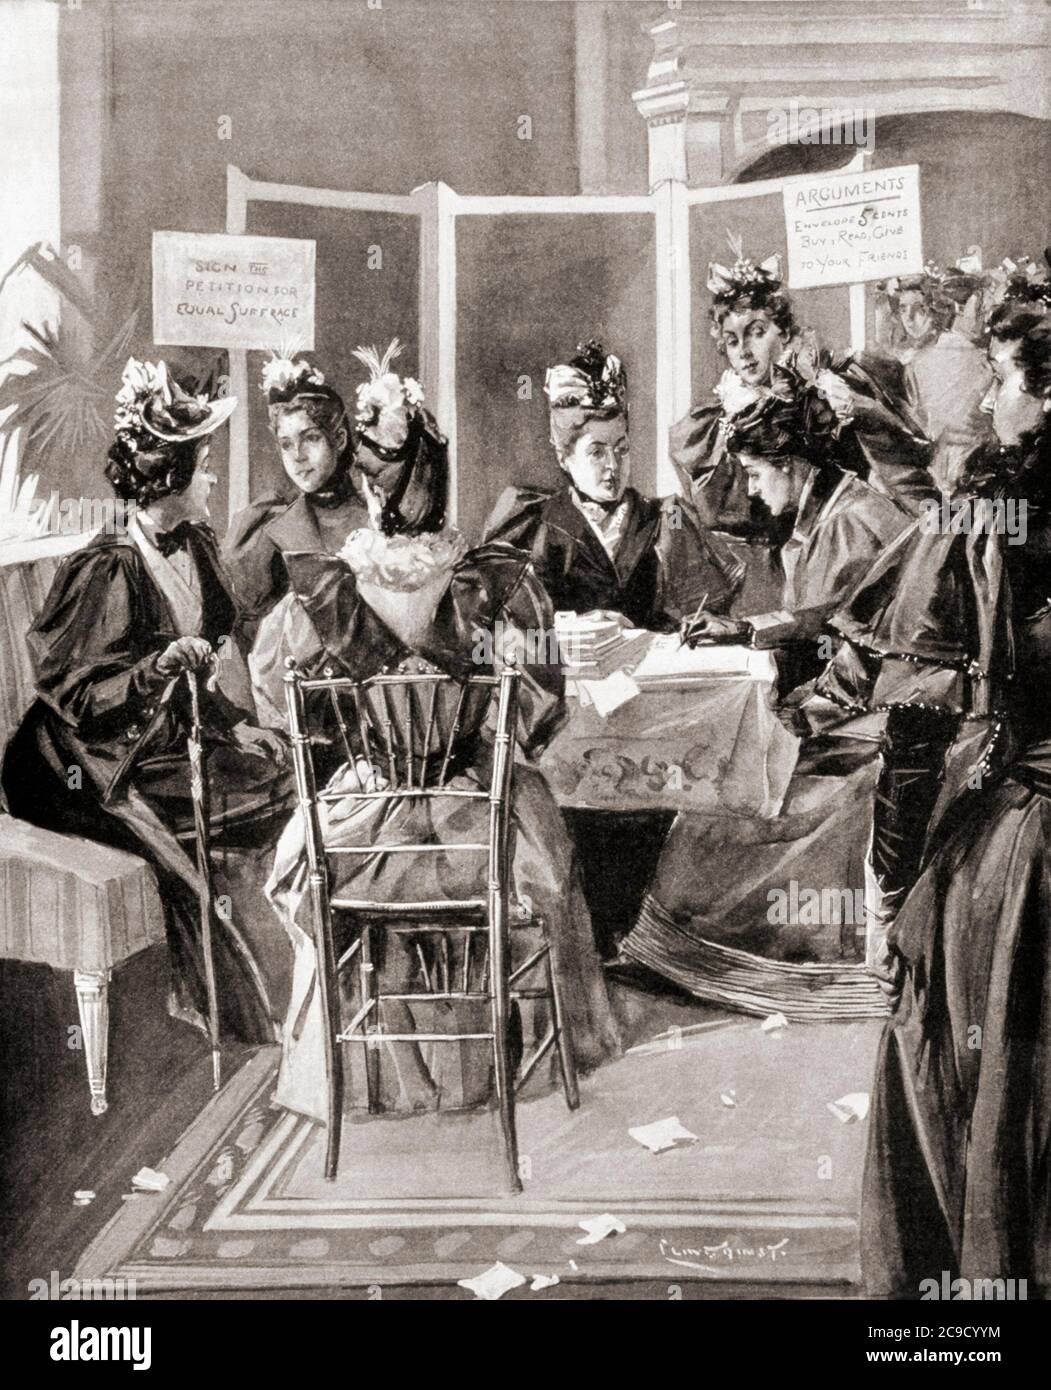 Les femmes de New York ont des suffragettes qui travaillent à obtenir des signatures pour des pétitions en faveur de leur mouvement. Après une illustration de Benjamin West Clinedinst dans l'édition du 3 mai 1894 du journal illustré de Frank Leslie. Banque D'Images